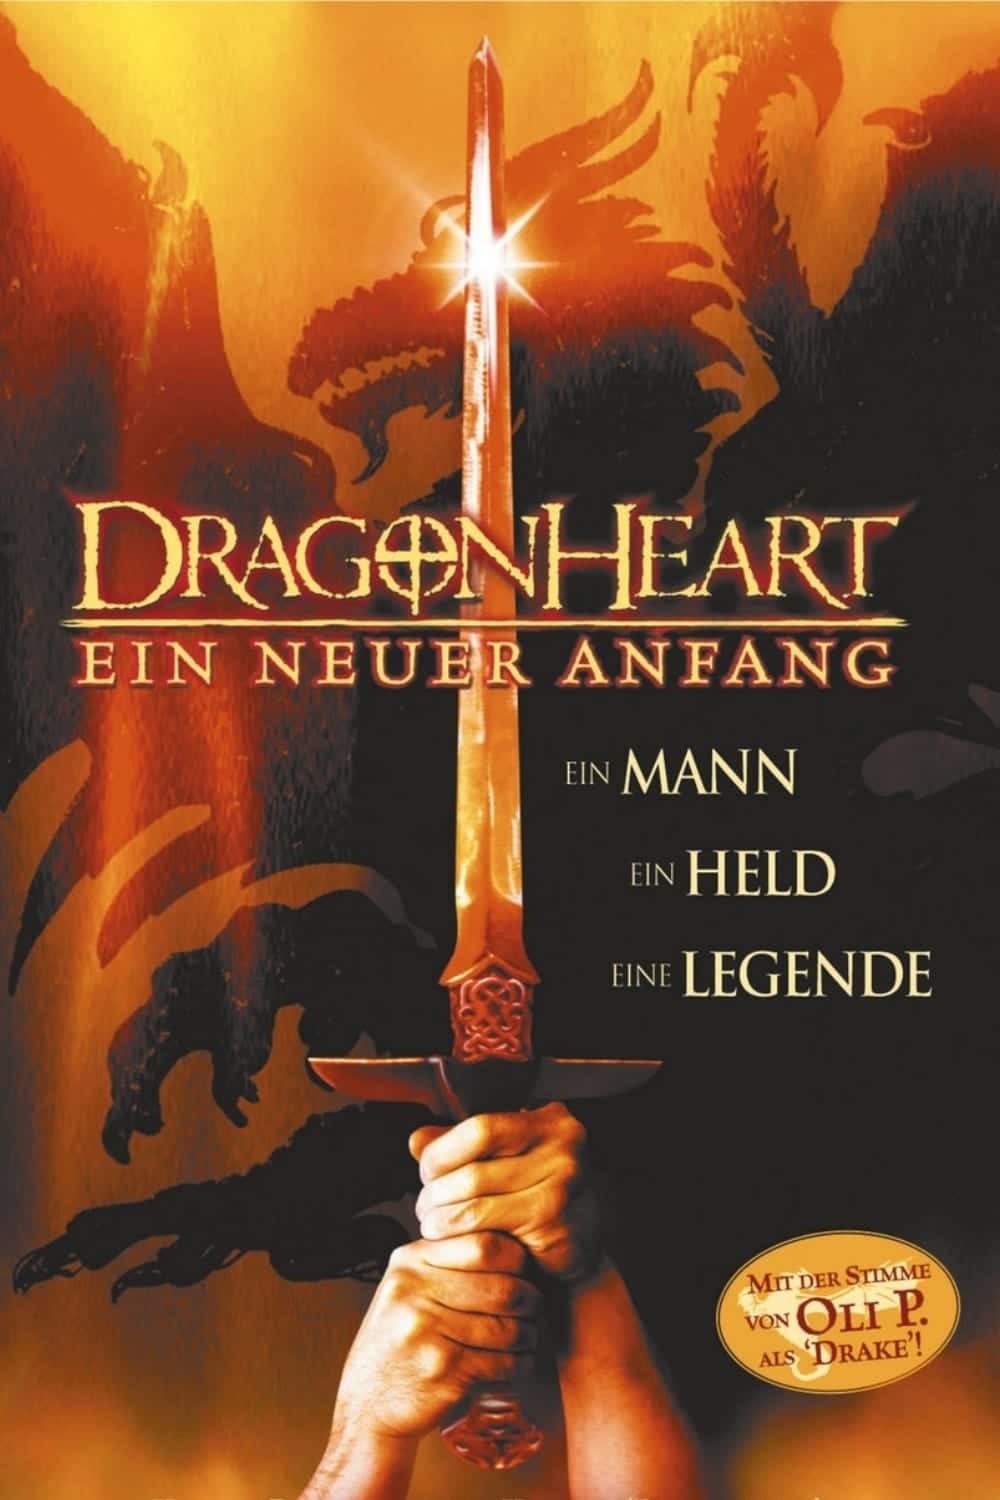 Plakat von "Dragonheart - Ein neuer Anfang"